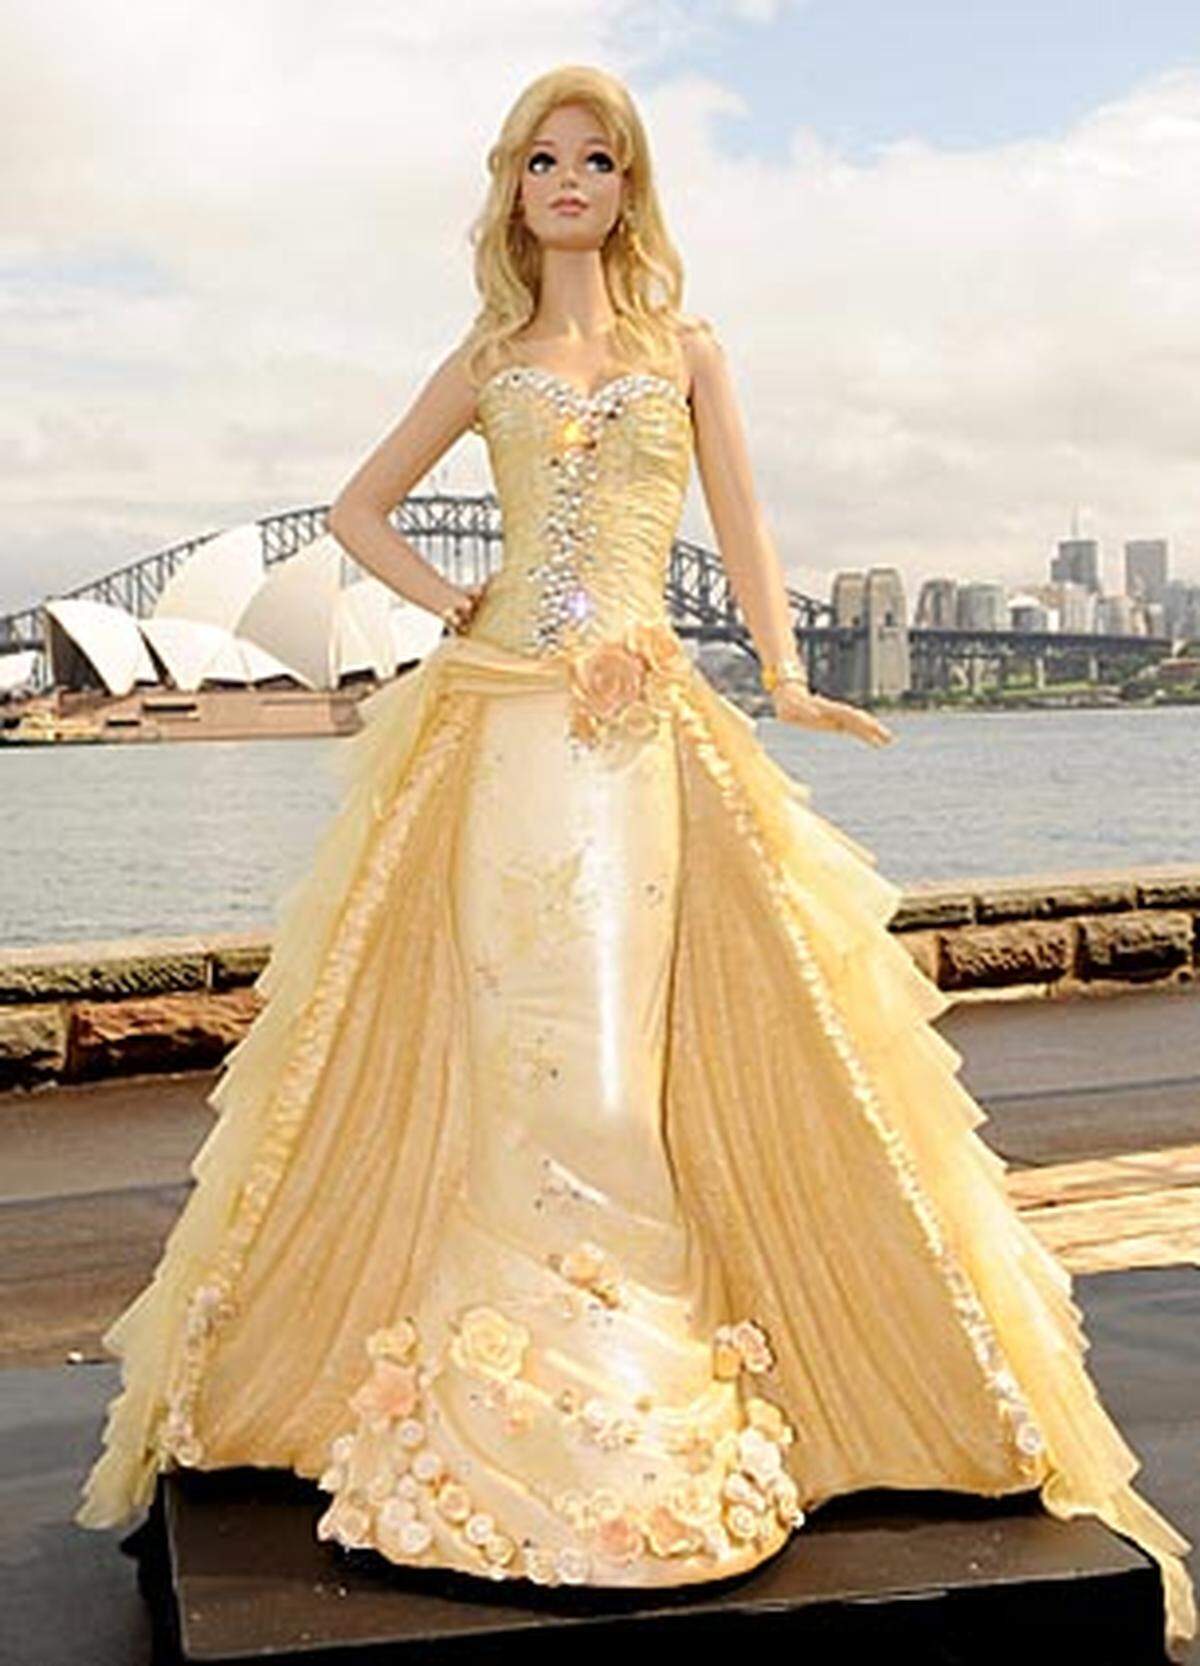 Im Hafen von Sydney steht anlässlich ihres 50. Geburtstages ein lebensgroßer Barbie-Kuchen. Das Kleid der essbaren Puppe wurde vom australischen Modeschöpfer Alex Perry designt.  Barbie in Designer-Kleidern